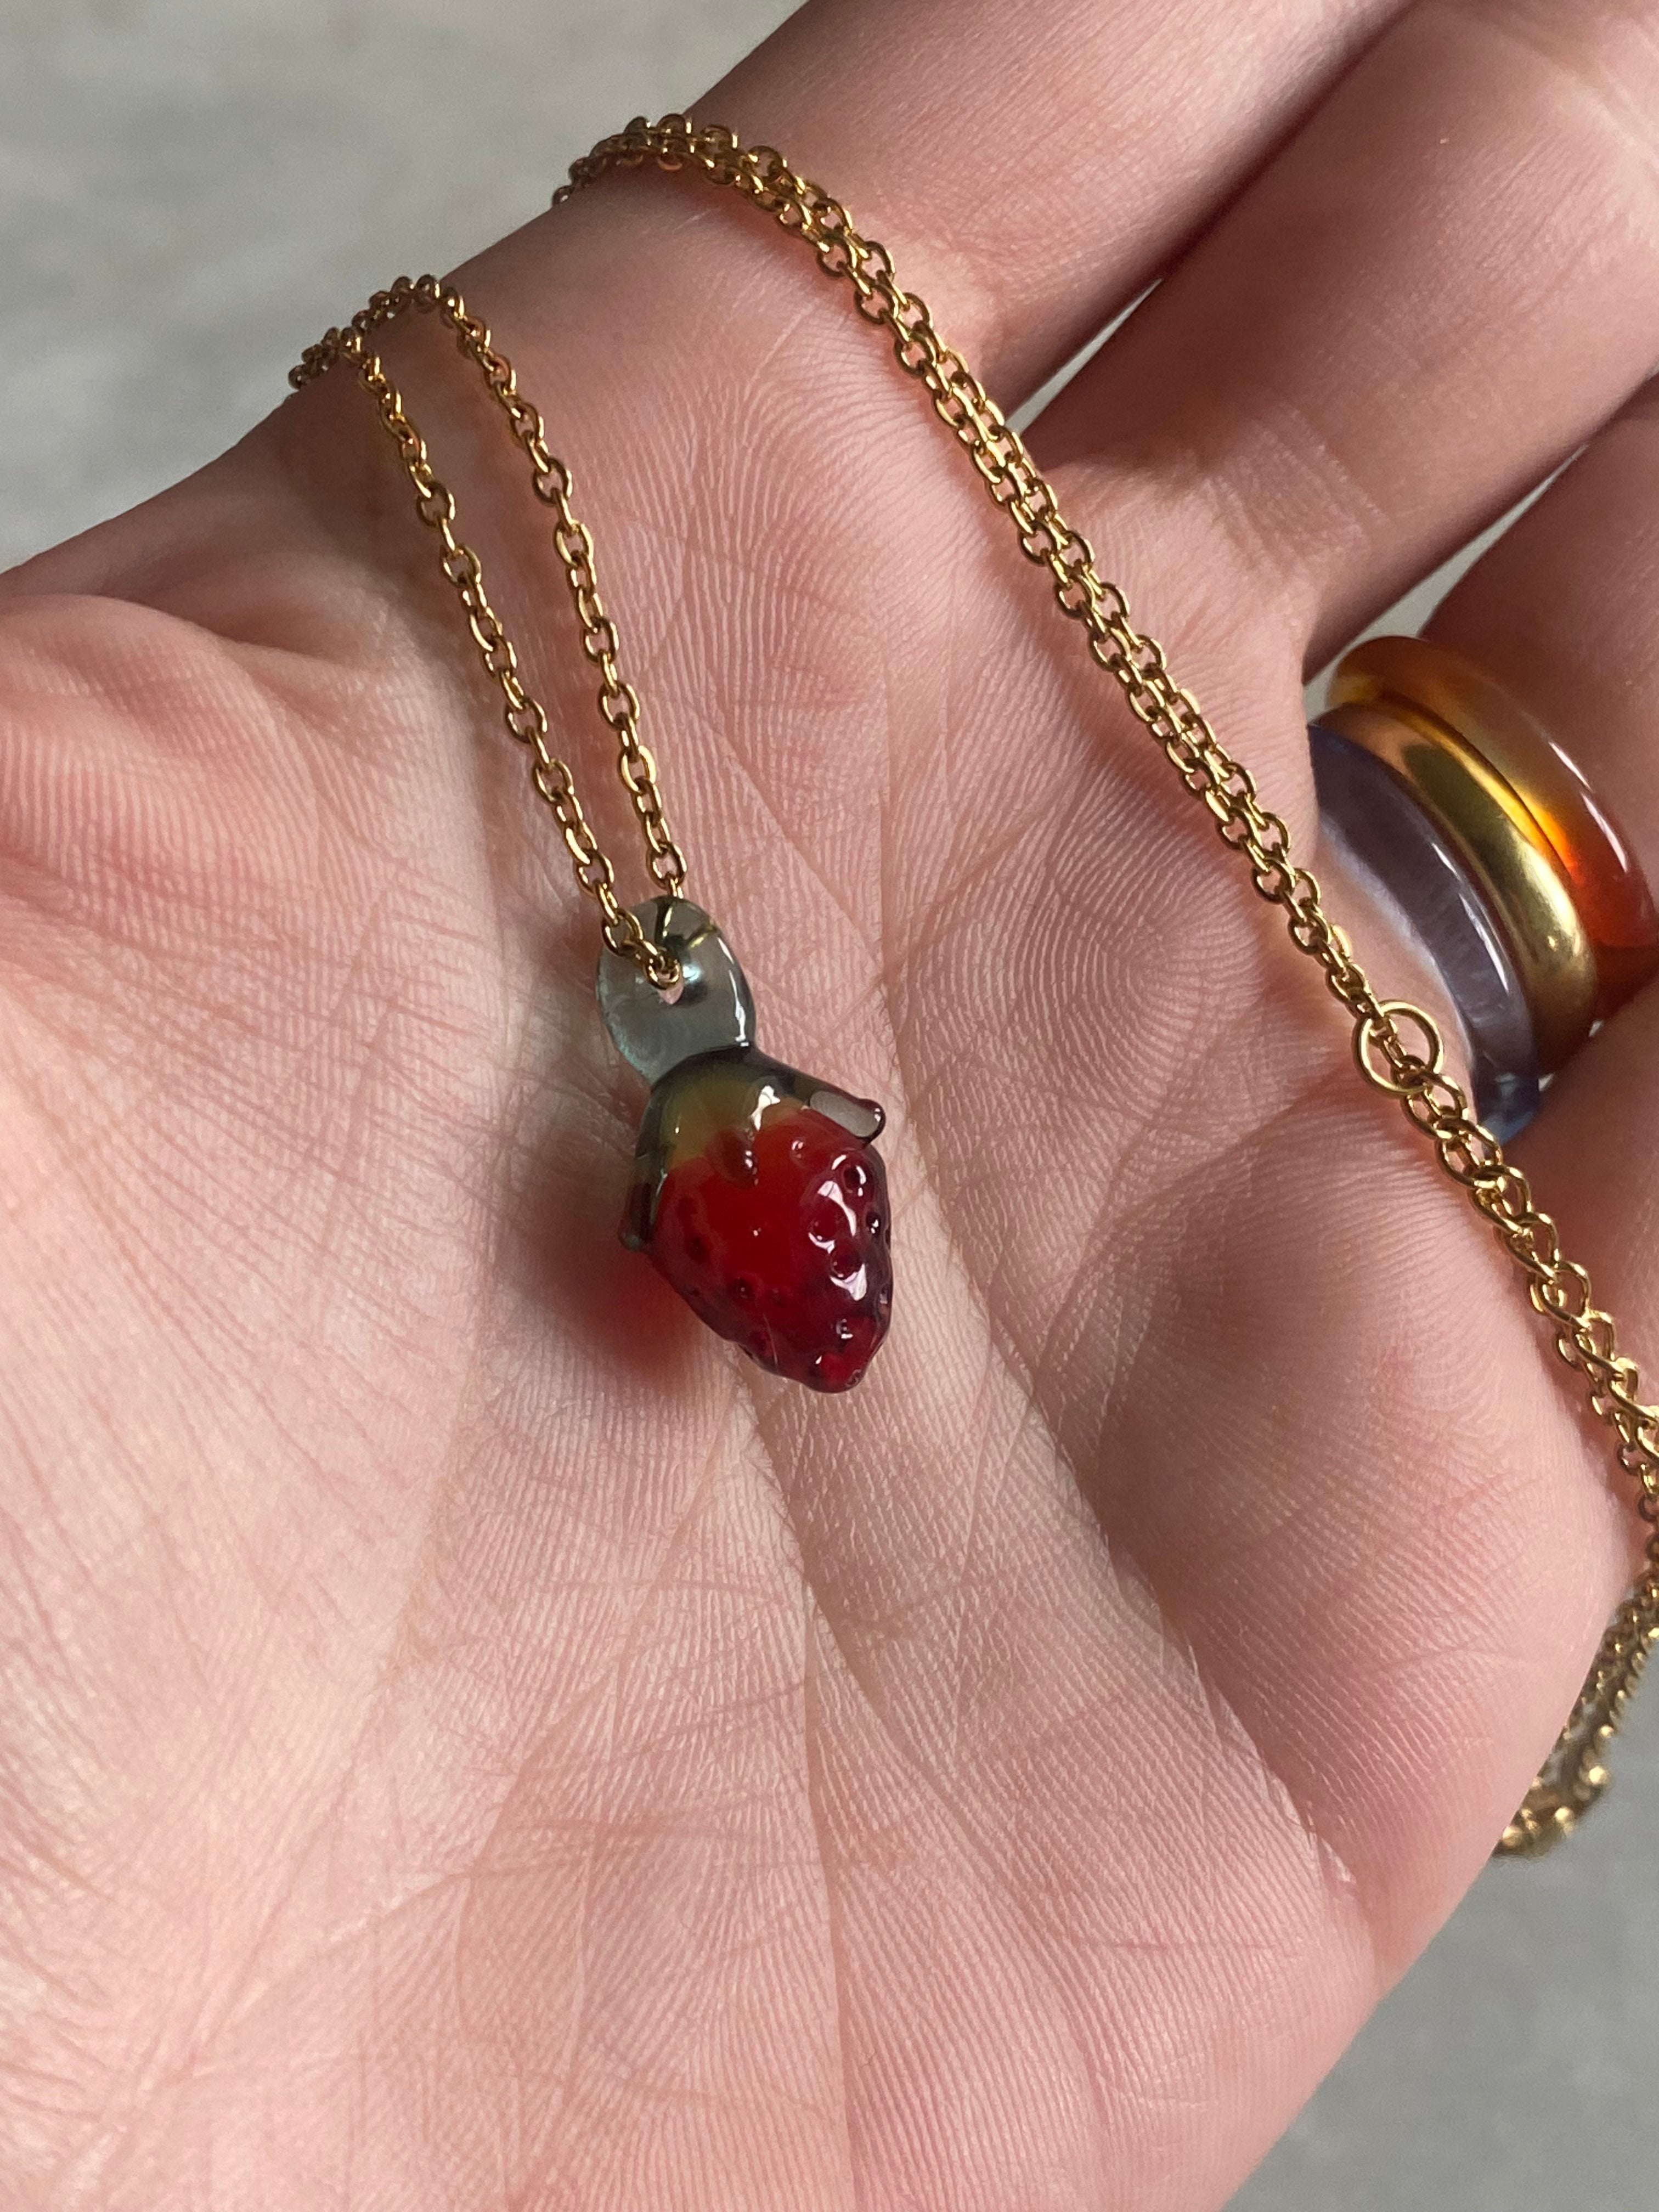 Mini Strawberry Glass Charm Necklace